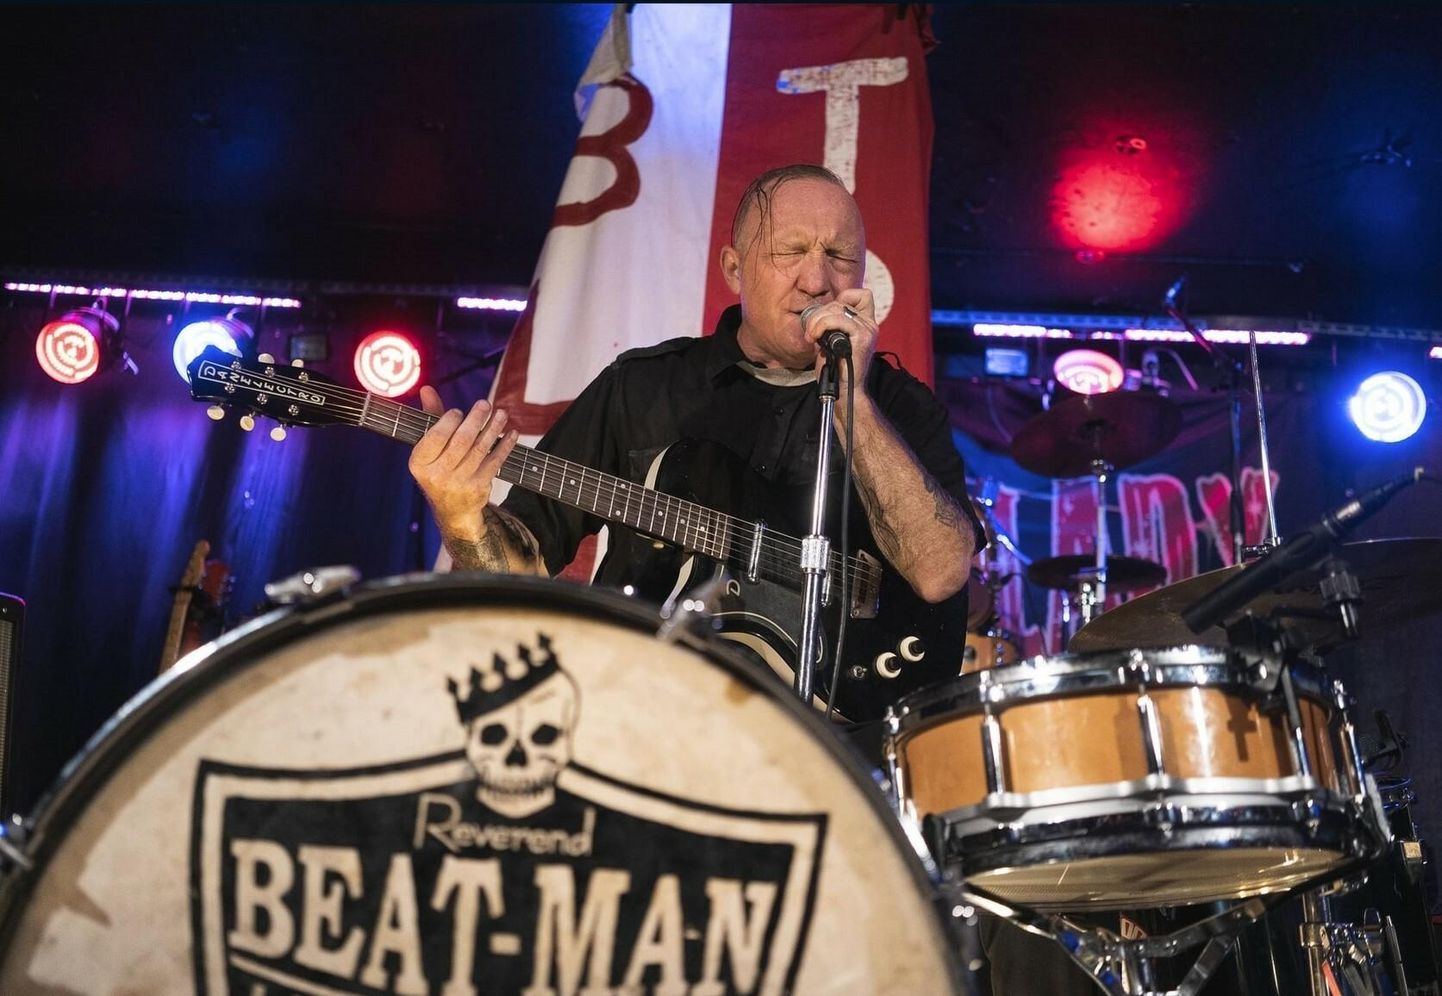 Reverend Beat-Man on kuulajate ees kitarri ja trummidega.